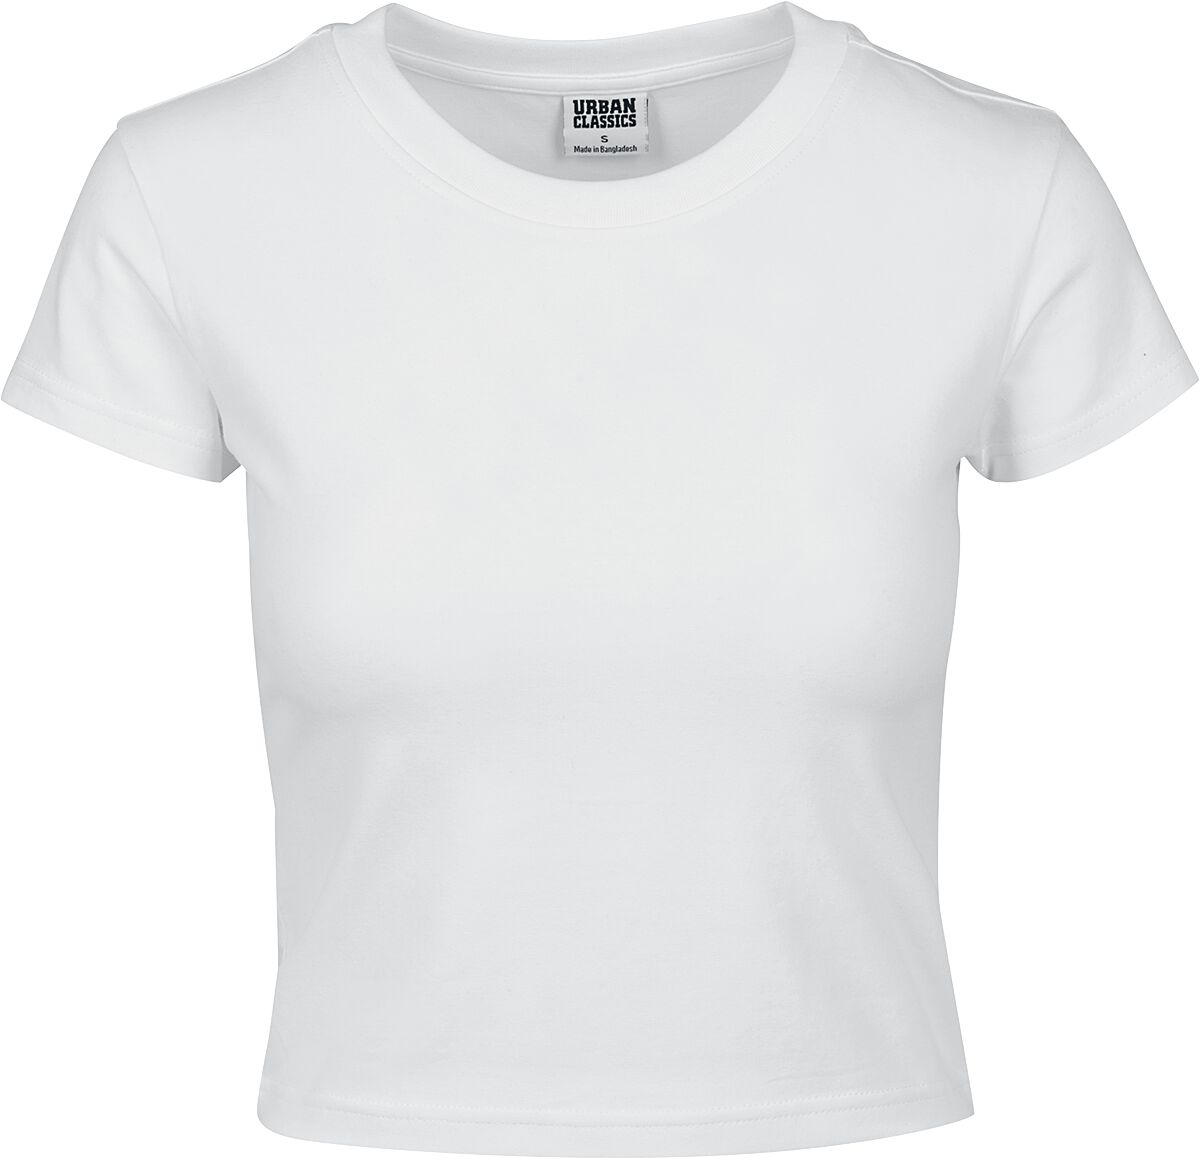 Urban Classics T-Shirt - Ladies Stretch Jersey Cropped Tee - XS bis XL - für Damen - Größe S - weiß